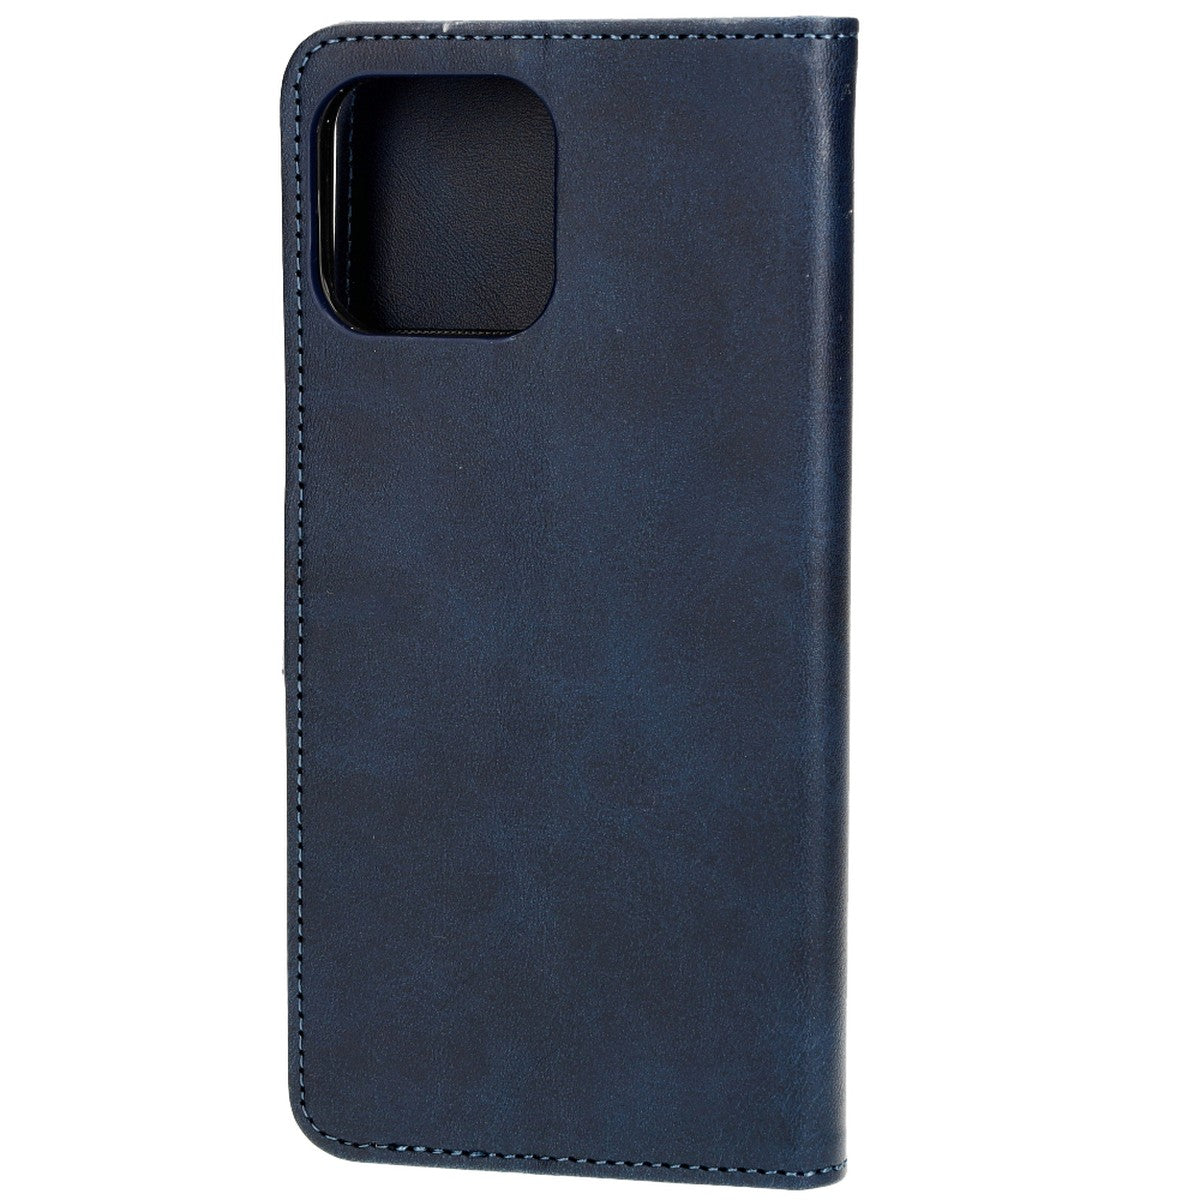 Schutzhülle Bizon Case Pocket für Apple iPhone 13 Pro Max, Dunkelblau